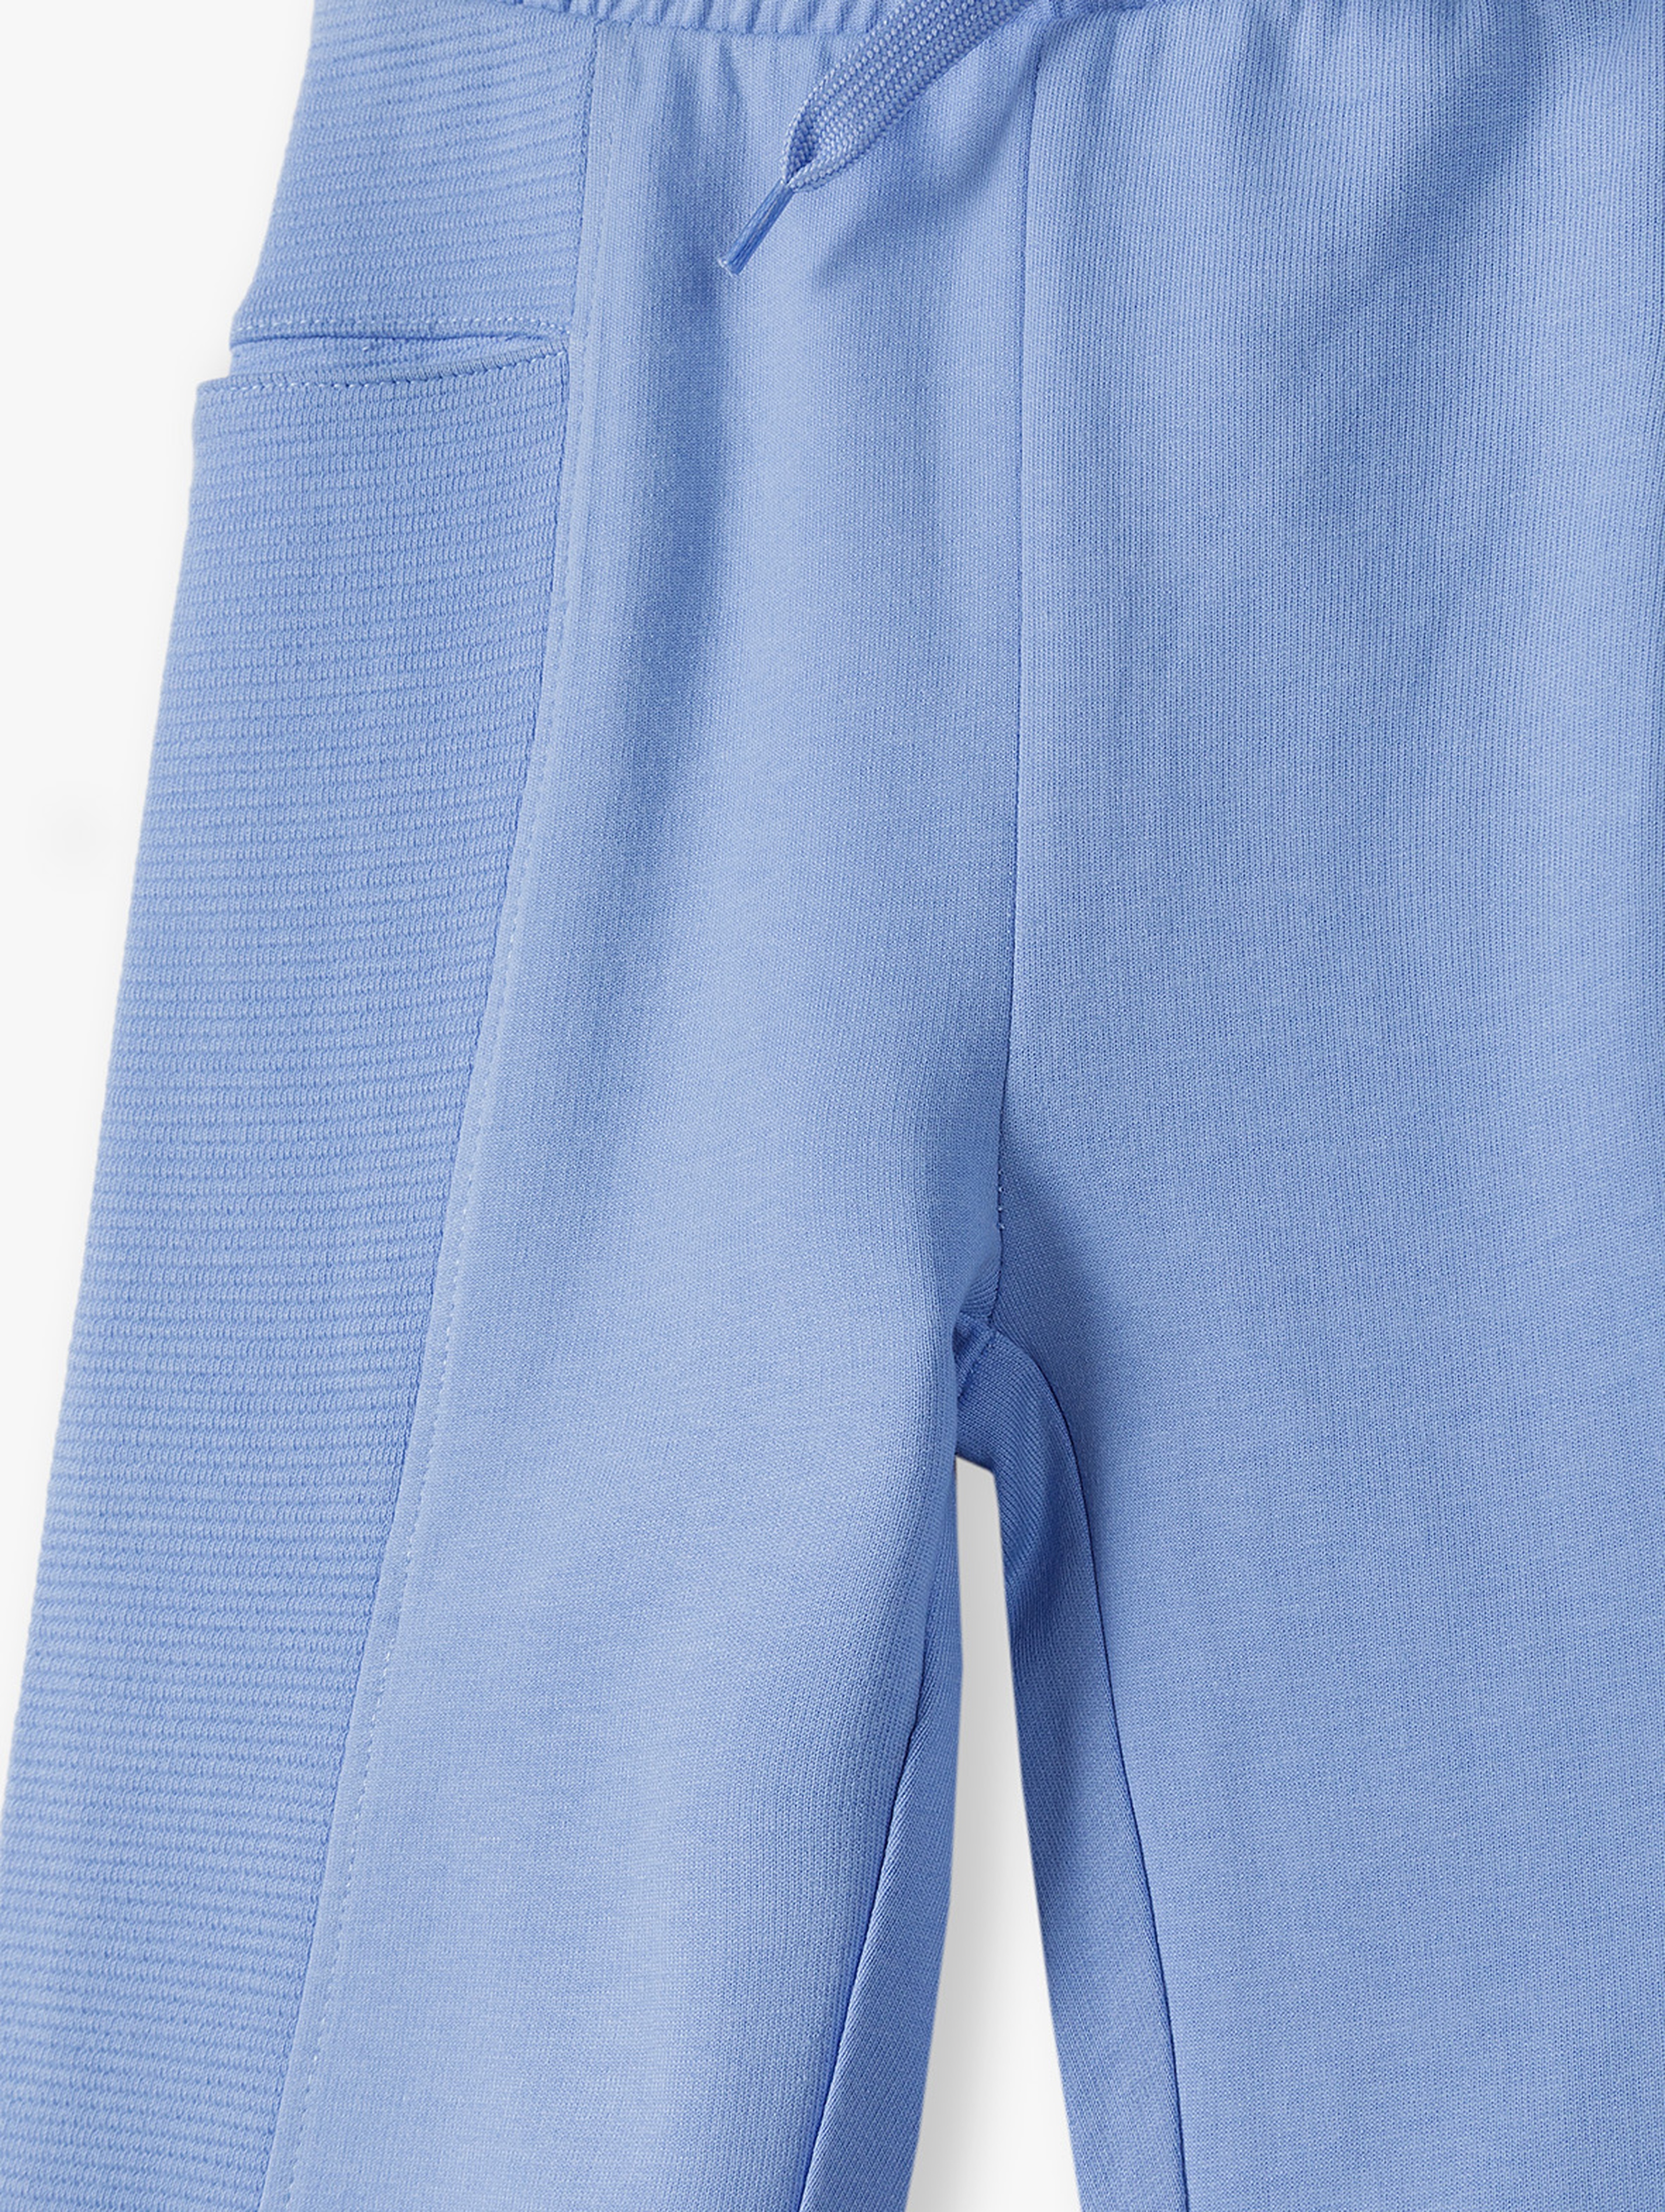 Niebieskie spodnie dresowe dla chłopca - 5.10.15.